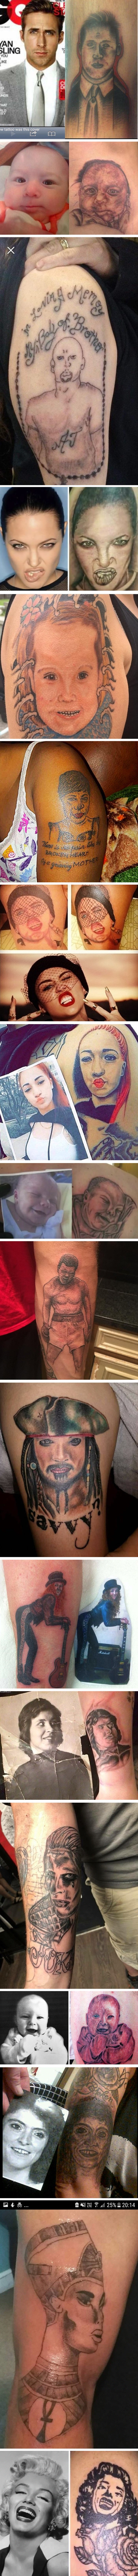 Tetovirali su portrete ljudi, no nisu mislili da će ispasti ovako očajno